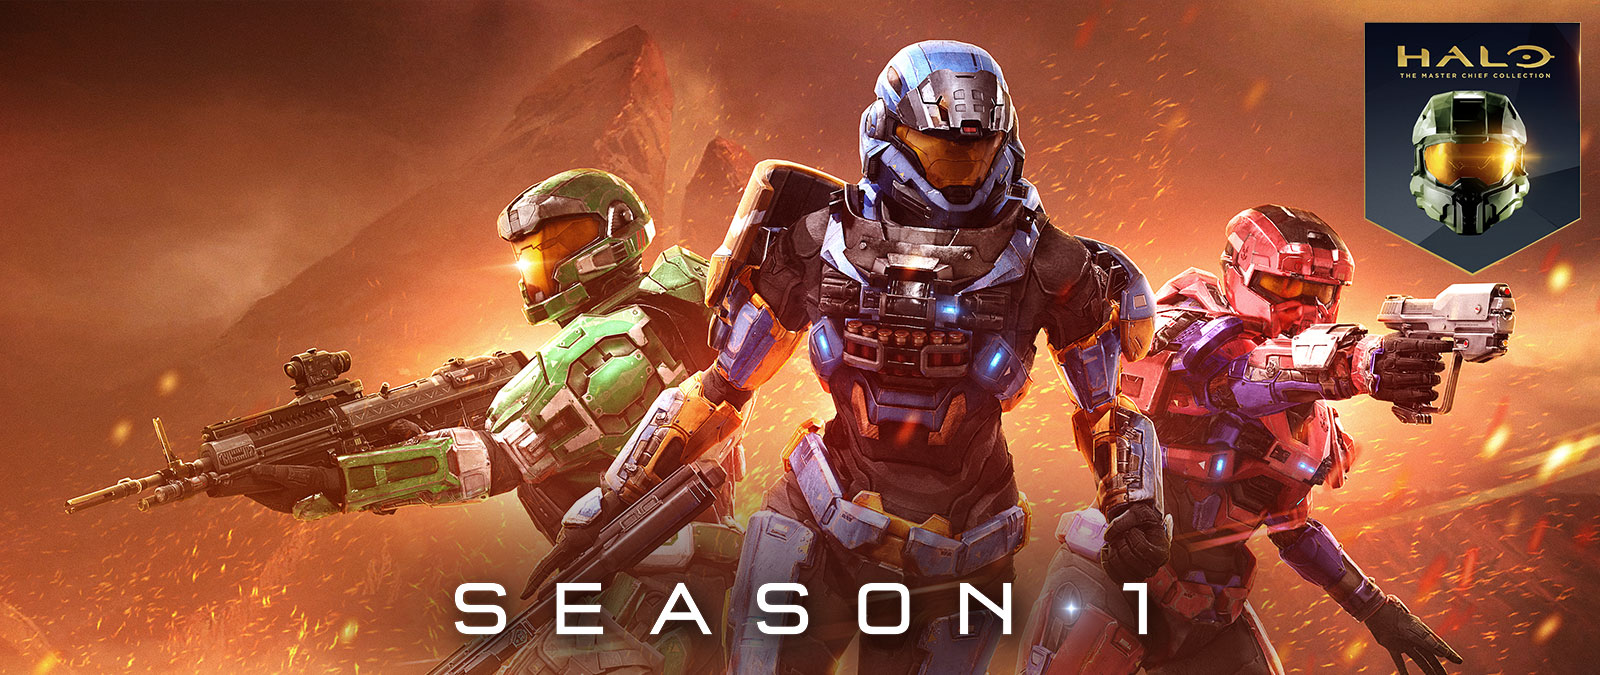 Halo: «Коллекция Мастера Чифа», 1 сезон, 3 персонажа из Halo: Reach стоят рядом на фоне огненного ландшафта